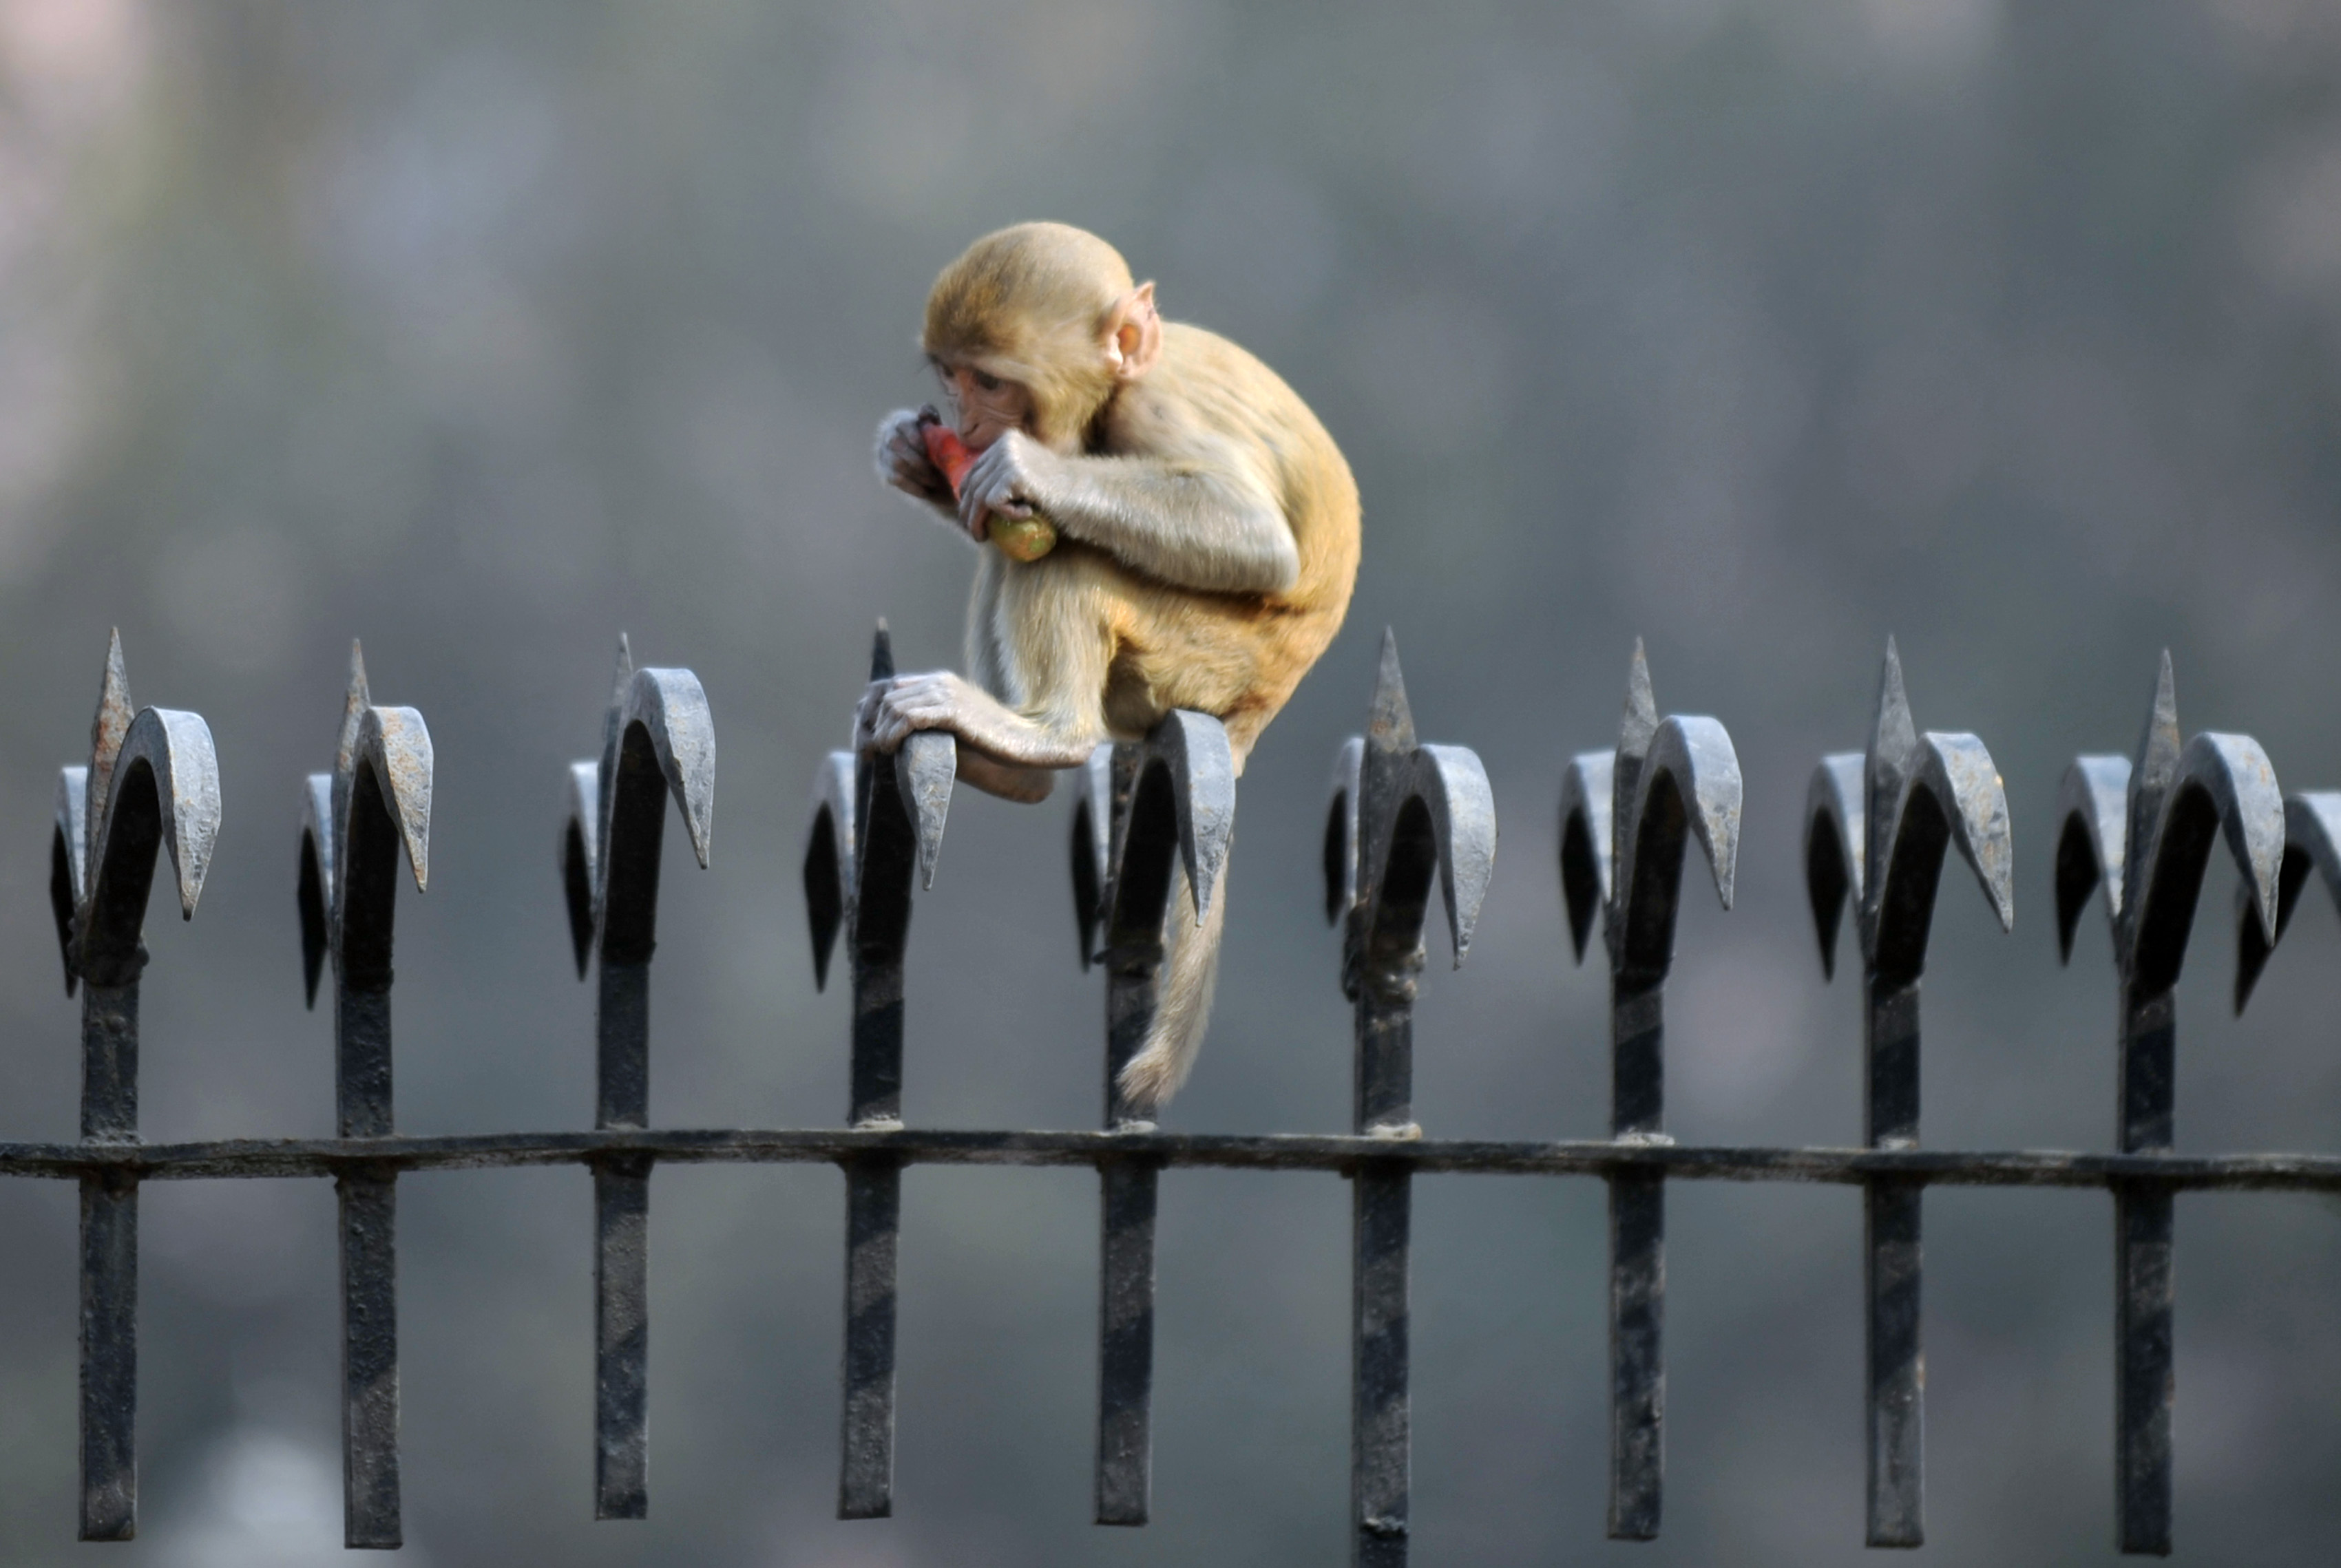 Majmok szállták meg az indiai parlamentet